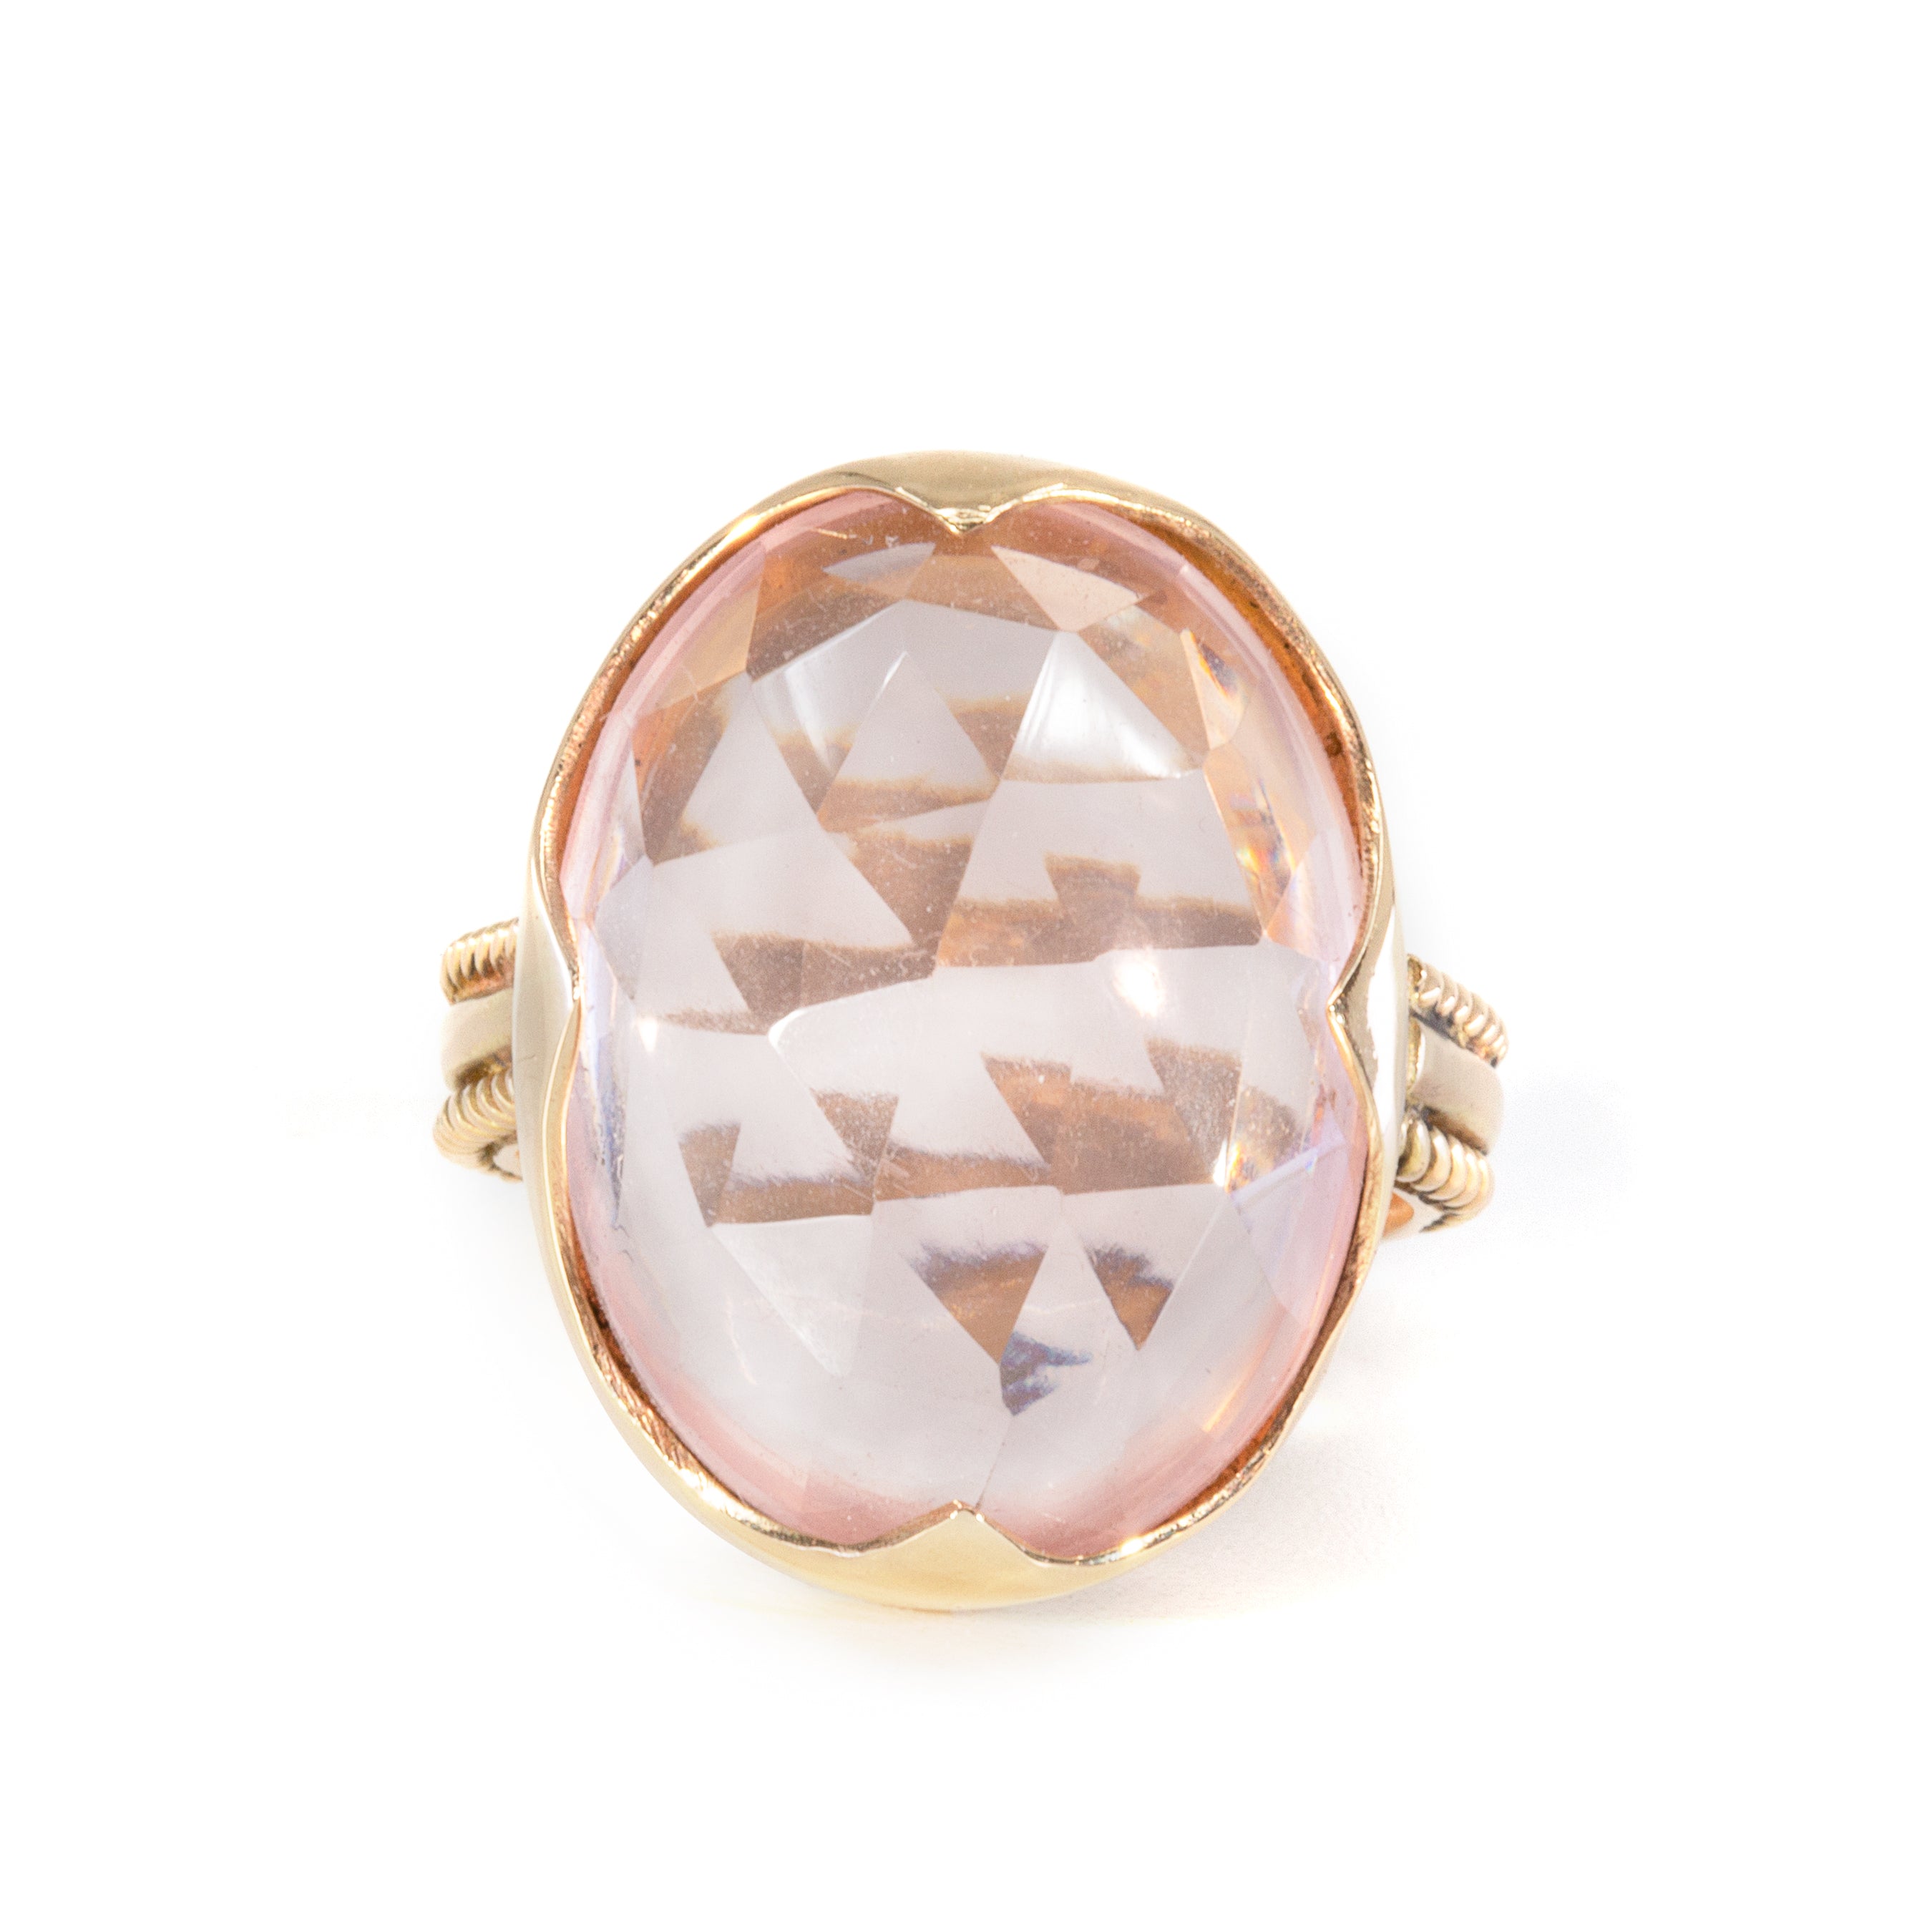 Faceted Rose Quartz 15.84ct Handcrafted 14k Gemstone Ring - BBO-382 - Crystalarium